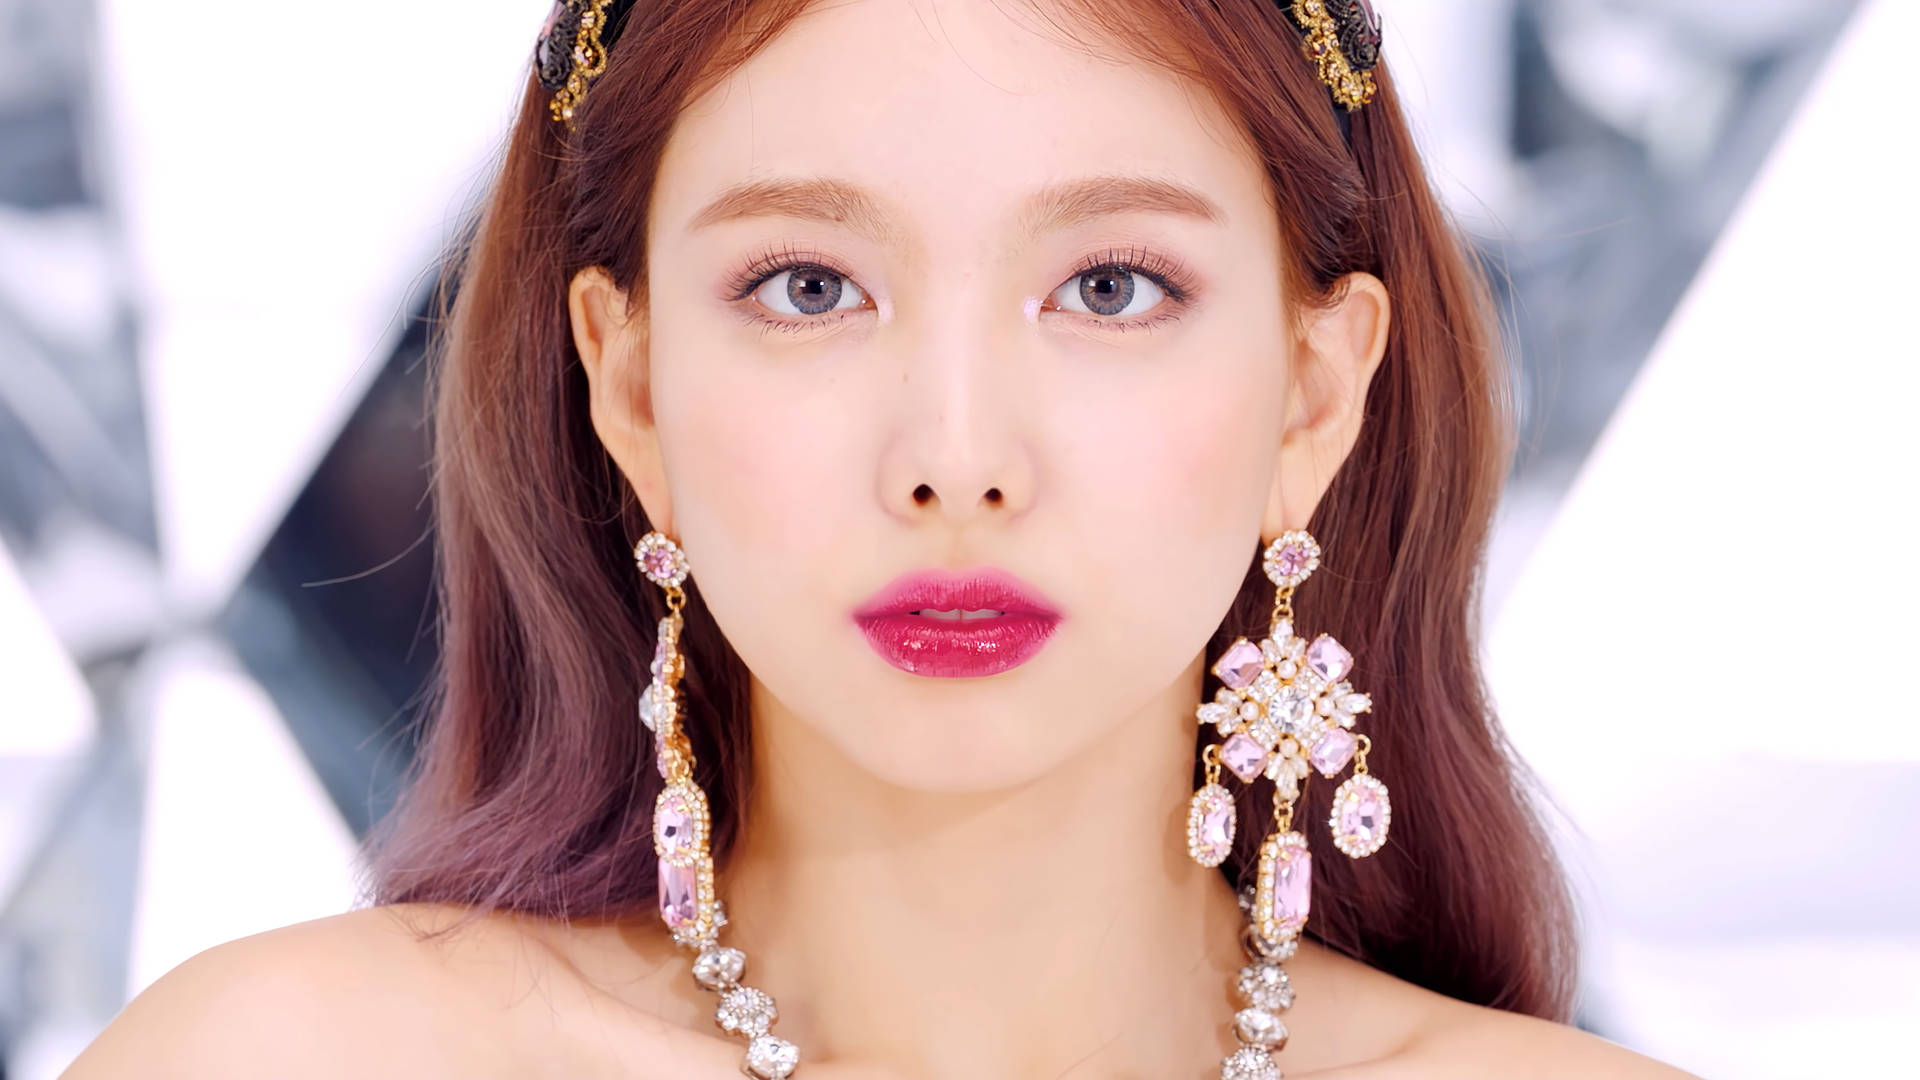 Twice Nayeon Pink Dangling Earrings Wallpaper